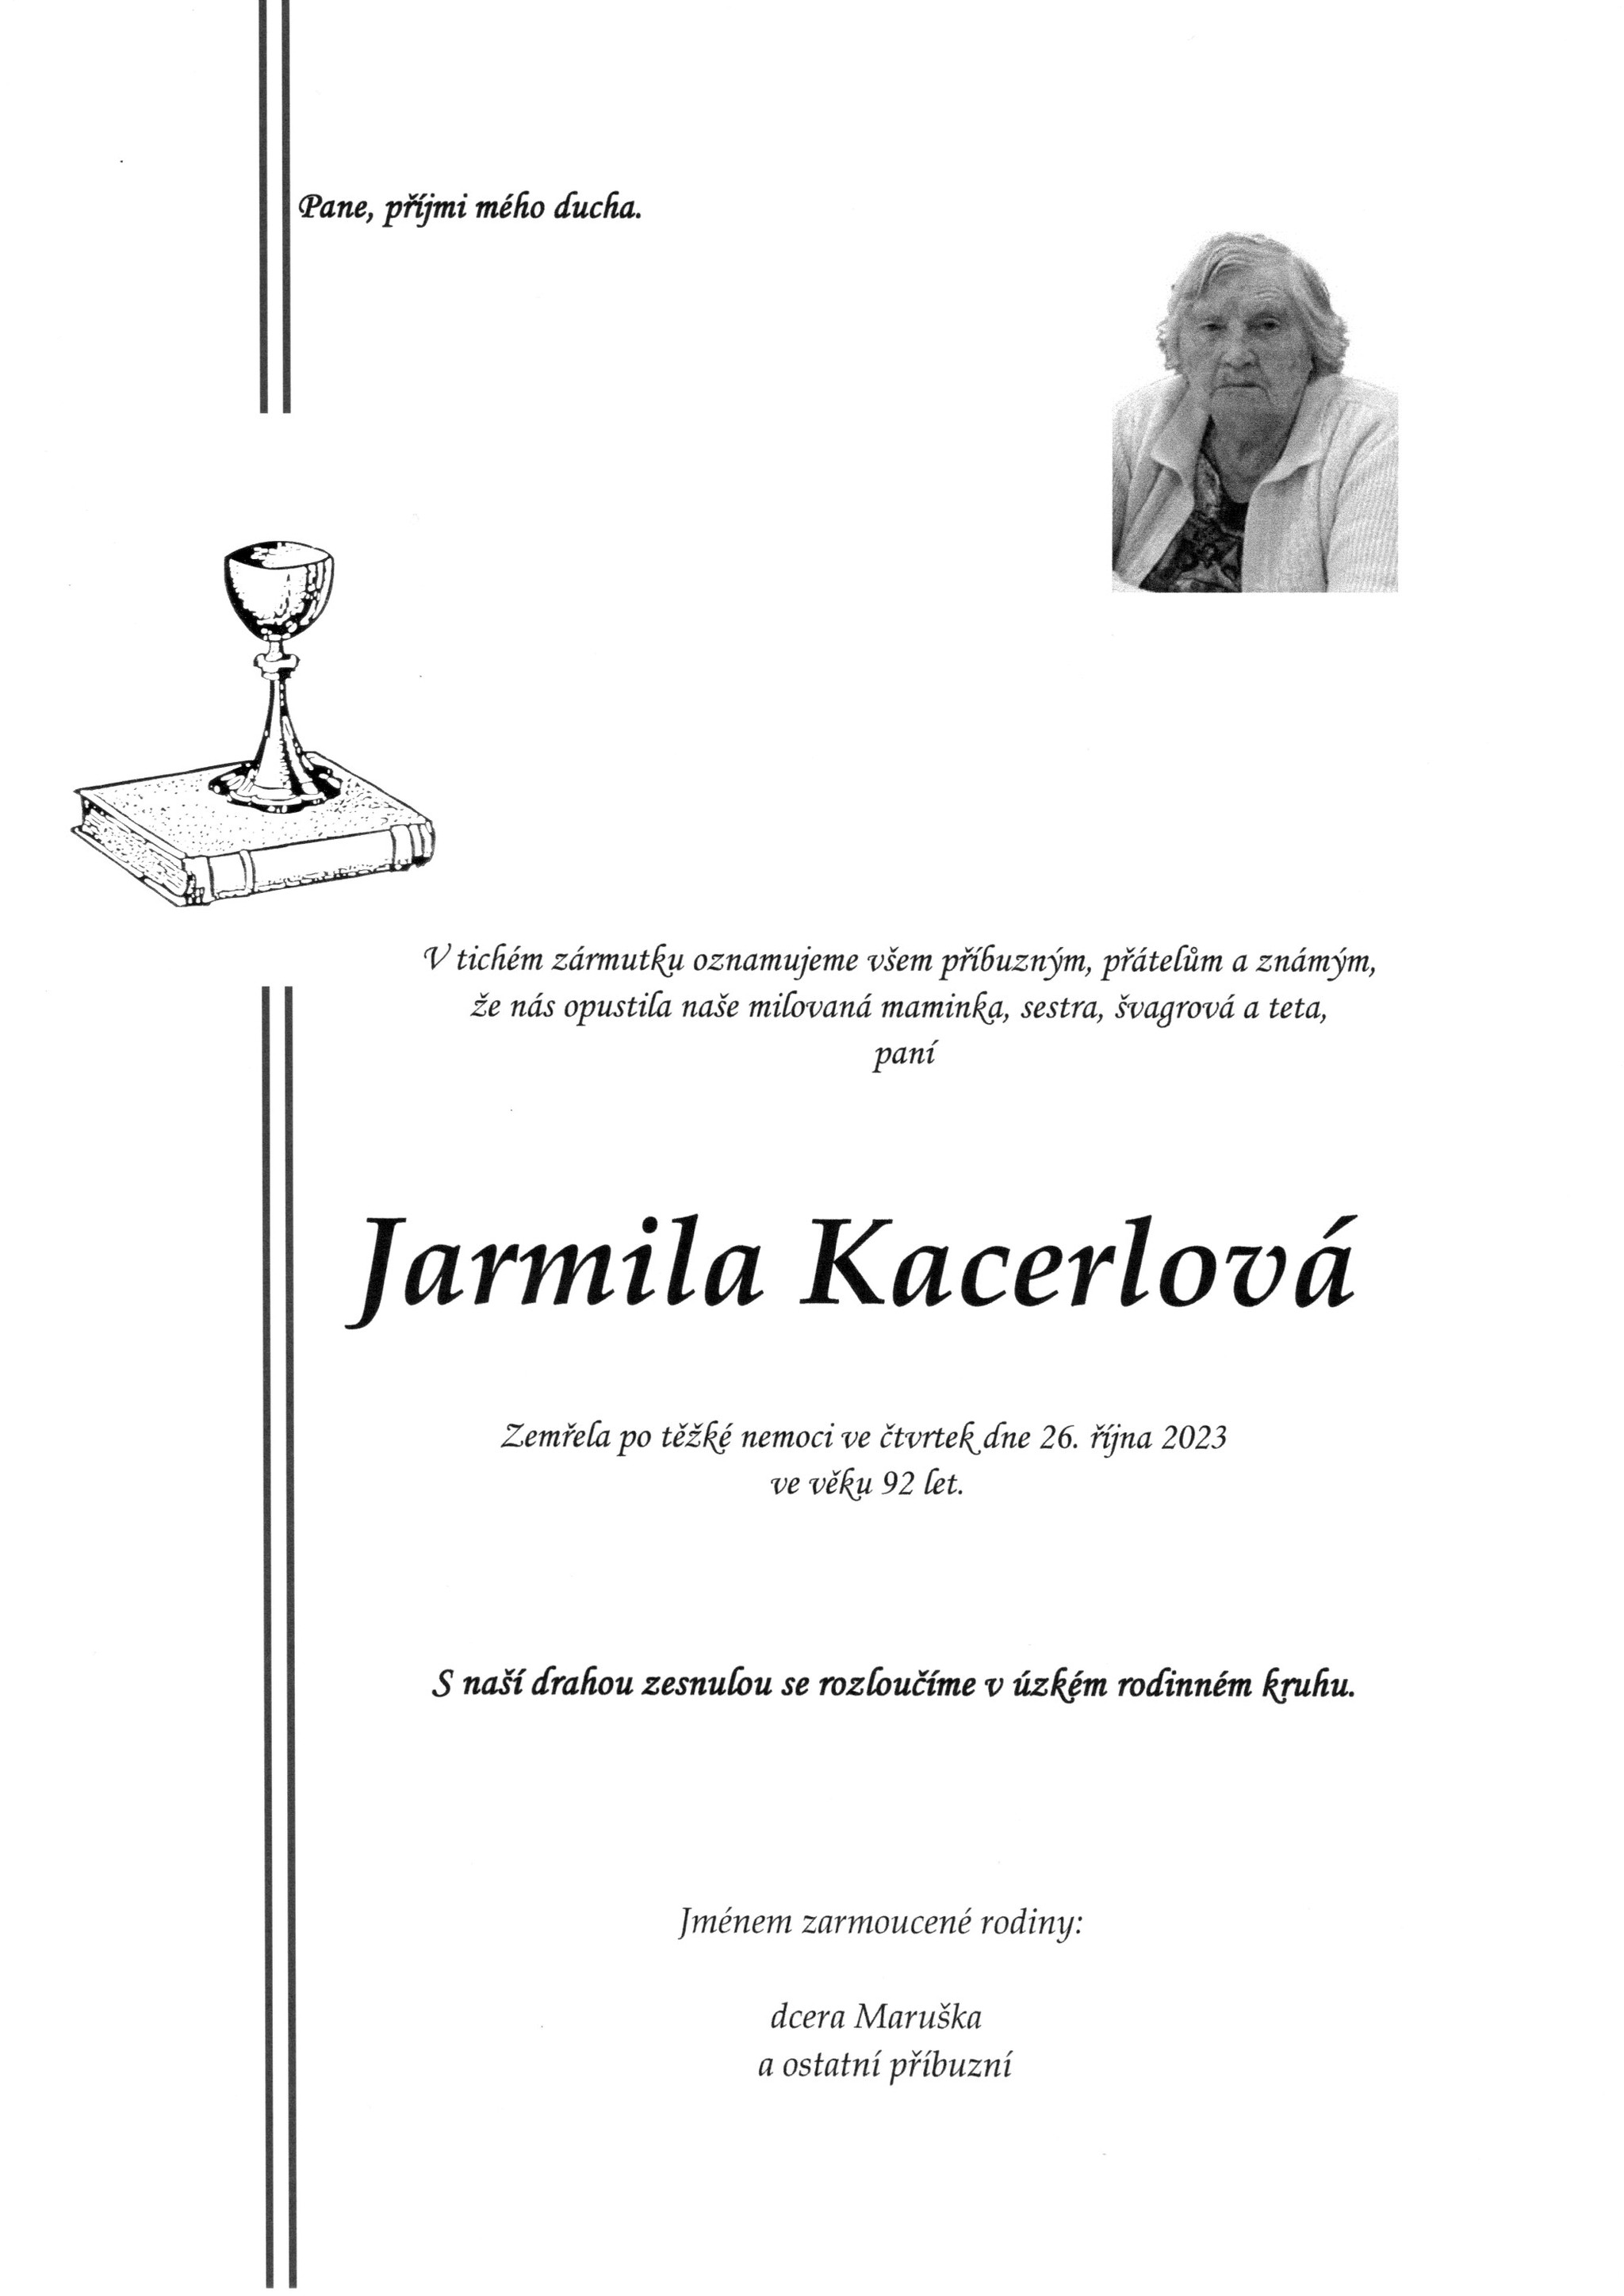 Jarmila Kacerlová